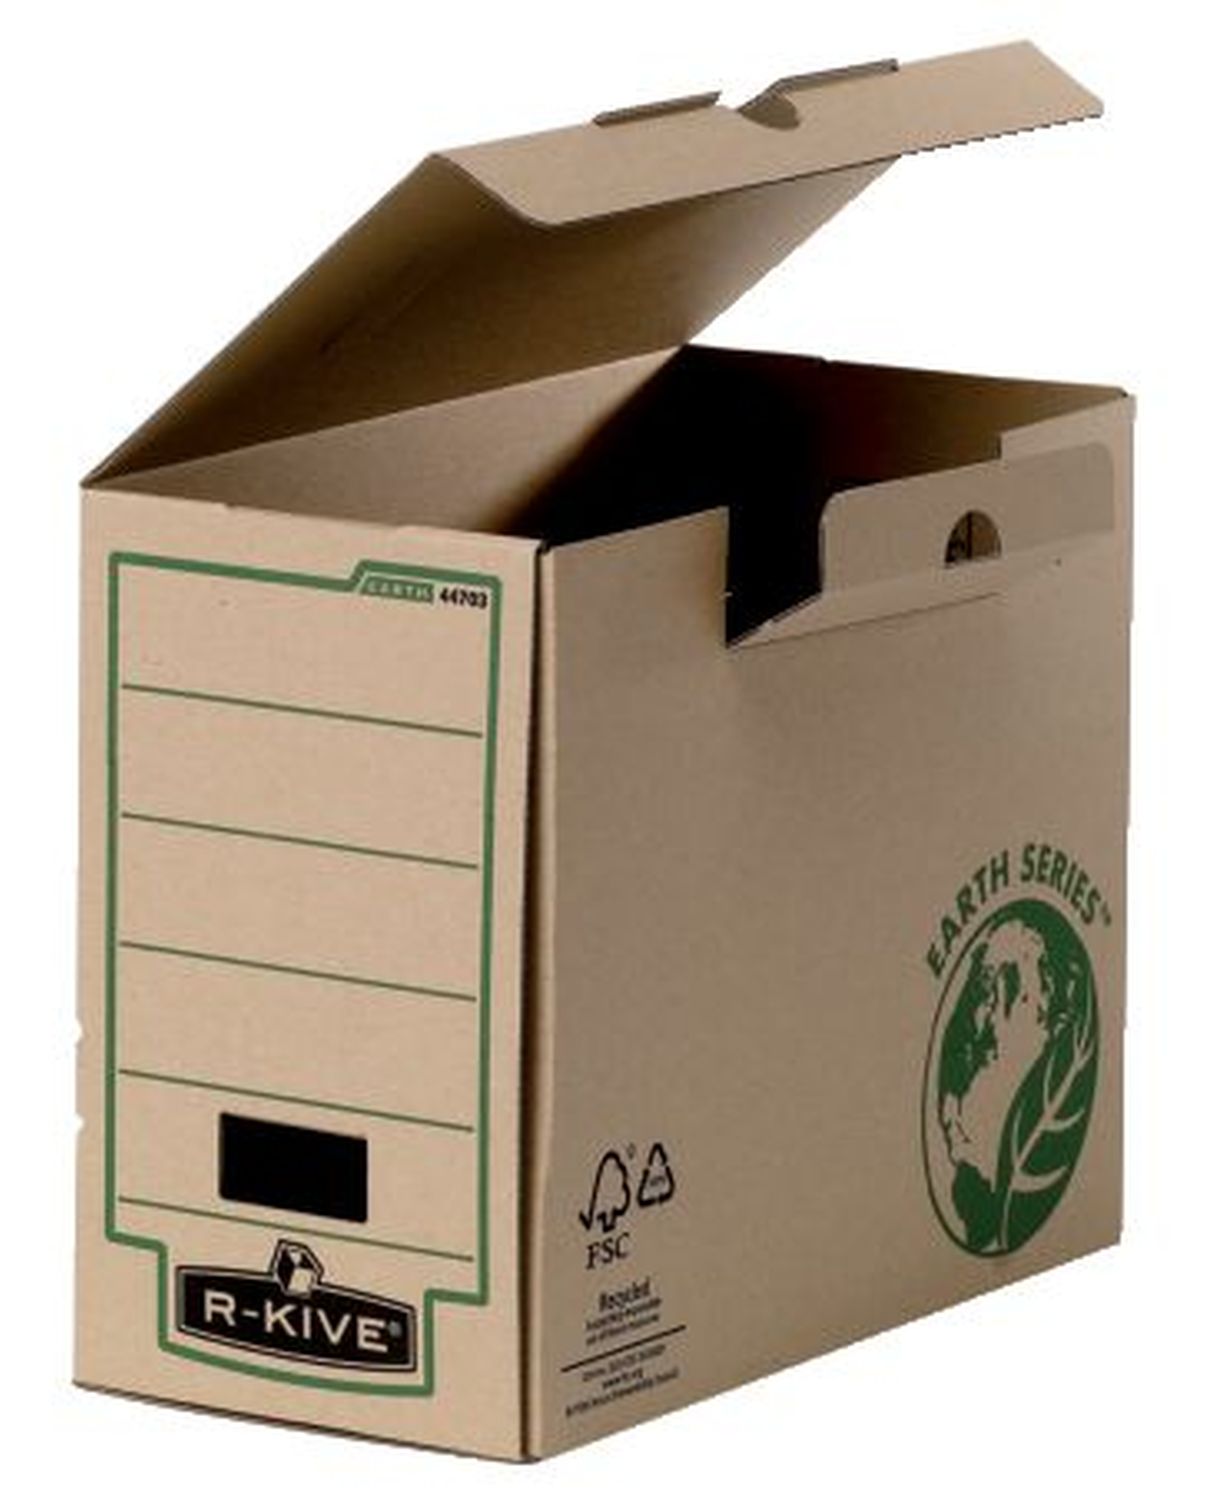 Archivschachtel Bankers Box® Earth Series 4470301, DIN A4, Rückenbreite 150 mm